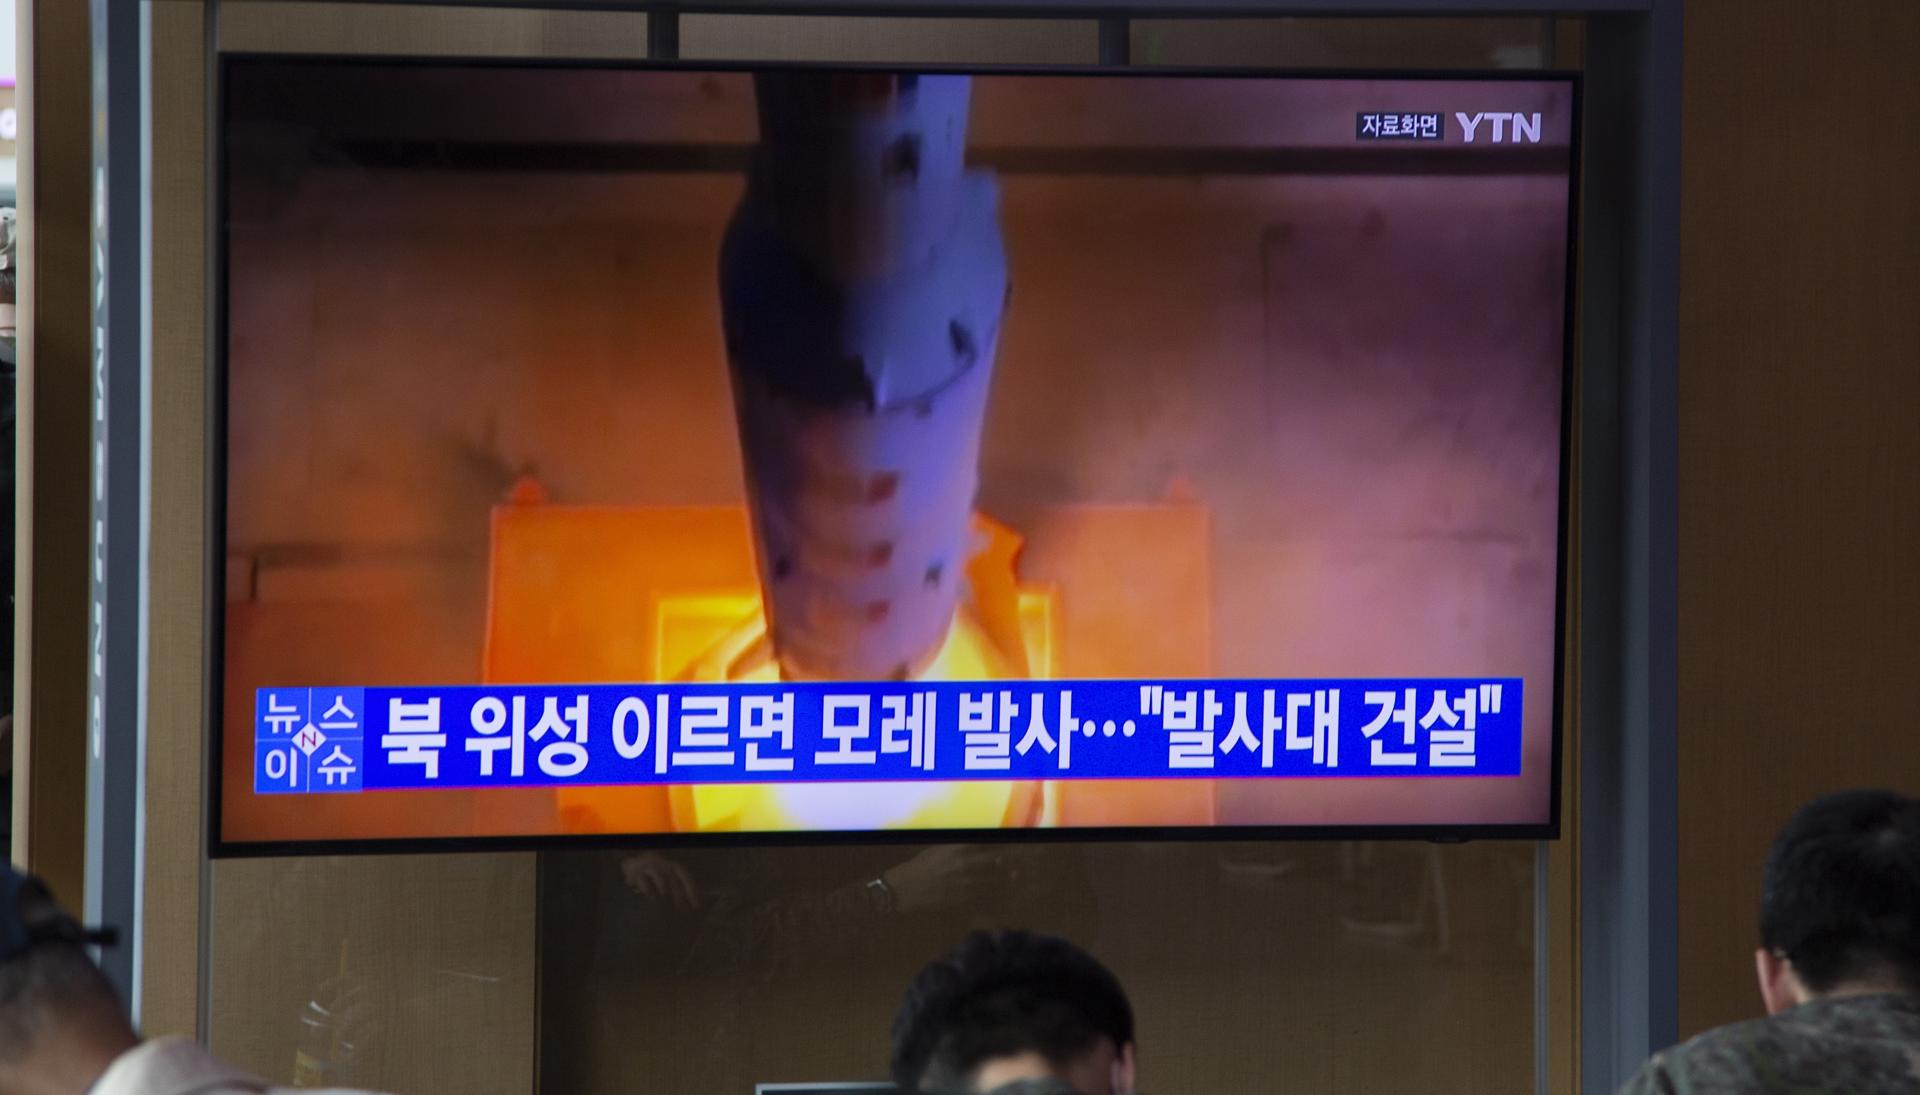 La televisión surcorena muestra imágenes del lanzamiento del cohete espacial norcoreano, este miércoles 31 de mayo.